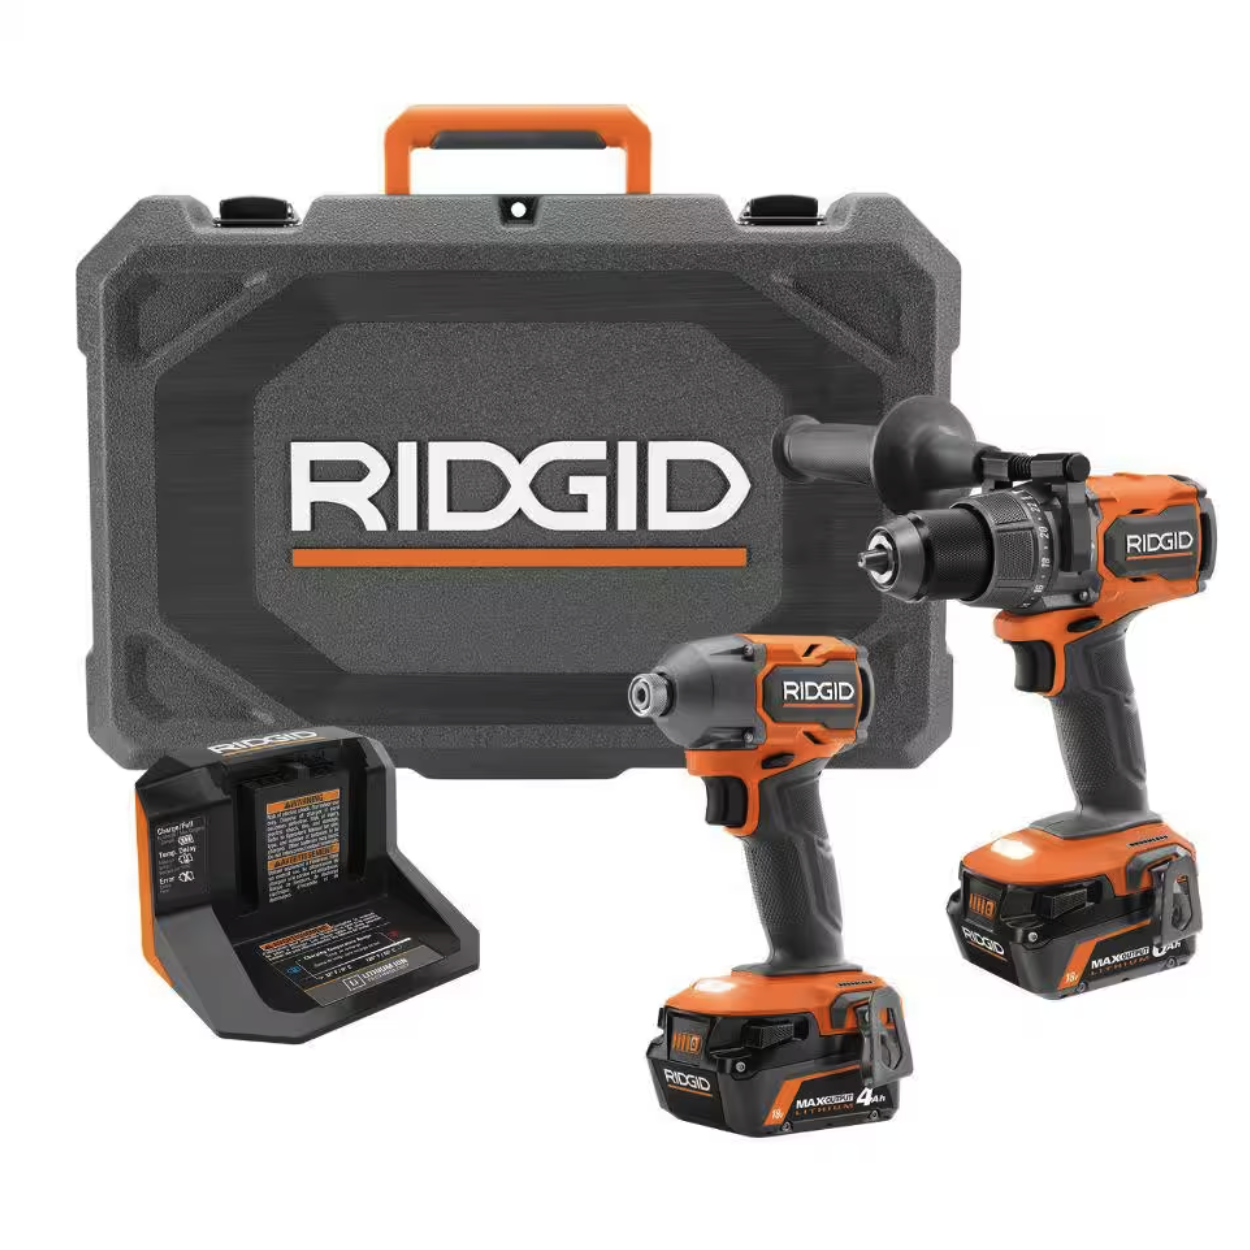 RIDGID: 18V Brushless 2-Tool Combo Kit